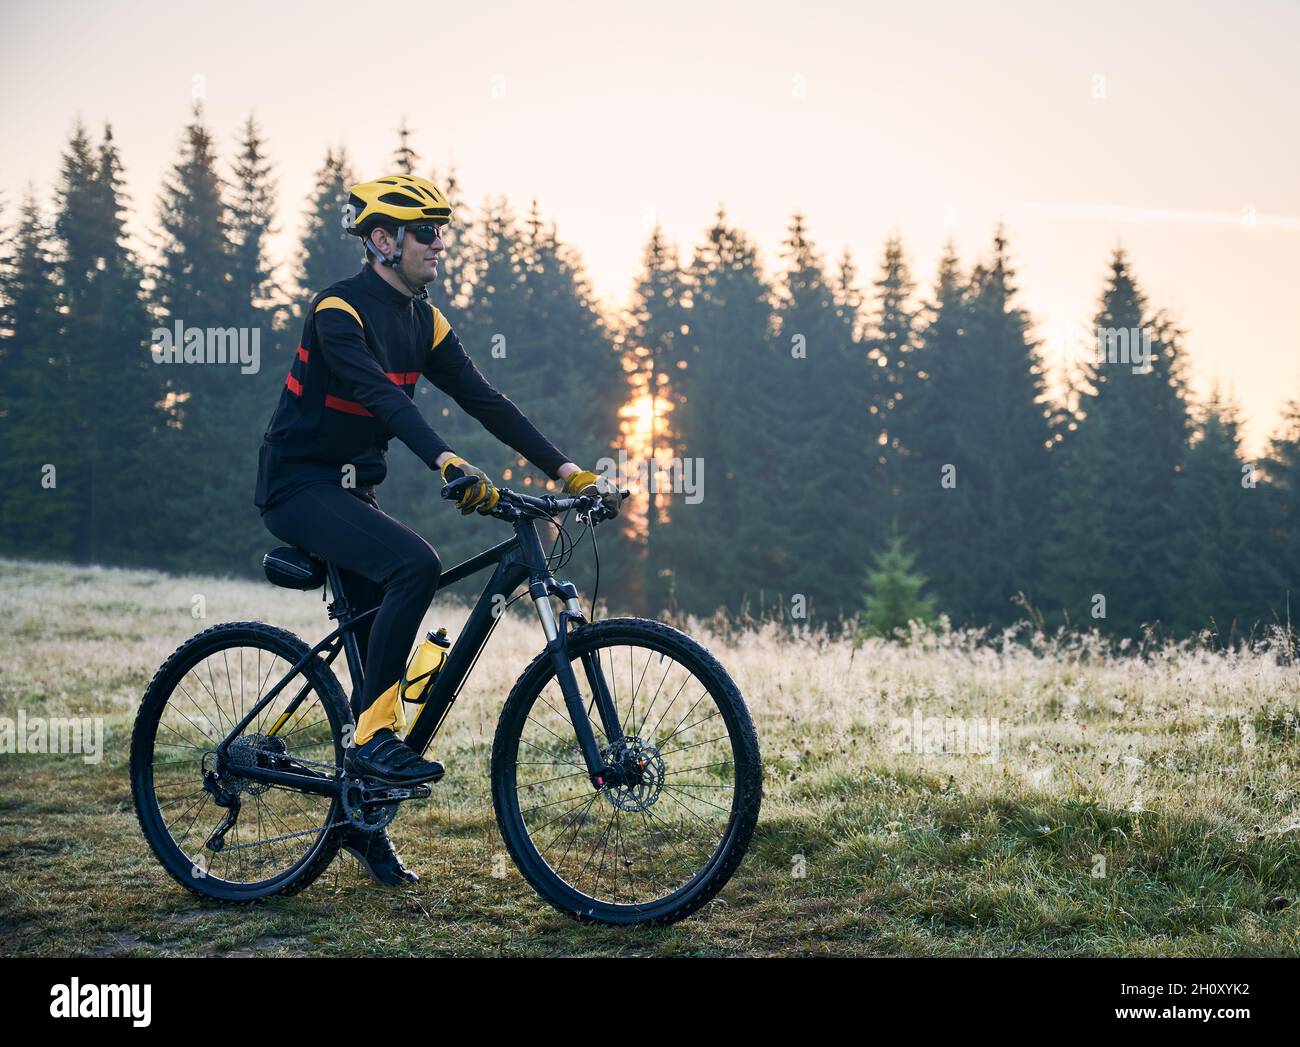 Seitenansicht des Radfahrers, der mit dem Fahrrad auf einem Bergpfad mit Nadelbäumen im Hintergrund steht. Mann Fahrradfahrer genießen Fahrradtour in den Bergen am Morgen. Konzept von Sport und aktiver Freizeit. Stockfoto